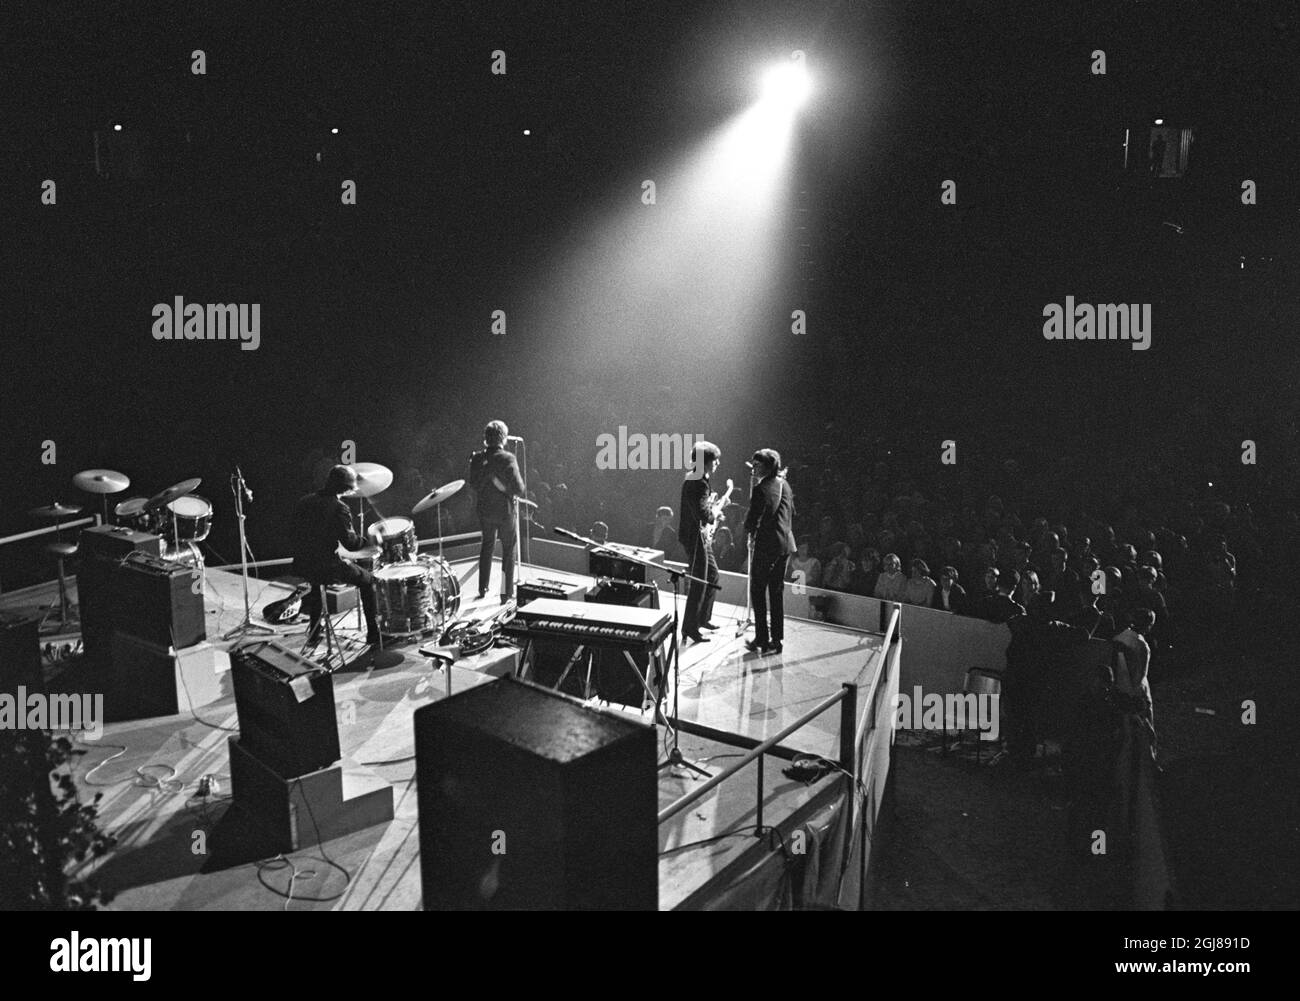 STOCKHOLM 1964-07-28 *POUR VOS DOSSIERS* les Beatles sont vus lors d'un concert au stade de glace de Johanneshov à Stockholm, Suède, 28 juillet 1964 Foto: Folke Hellberg / DN / TT / Kod: 23 **OUT SWEDEN OUT** Banque D'Images